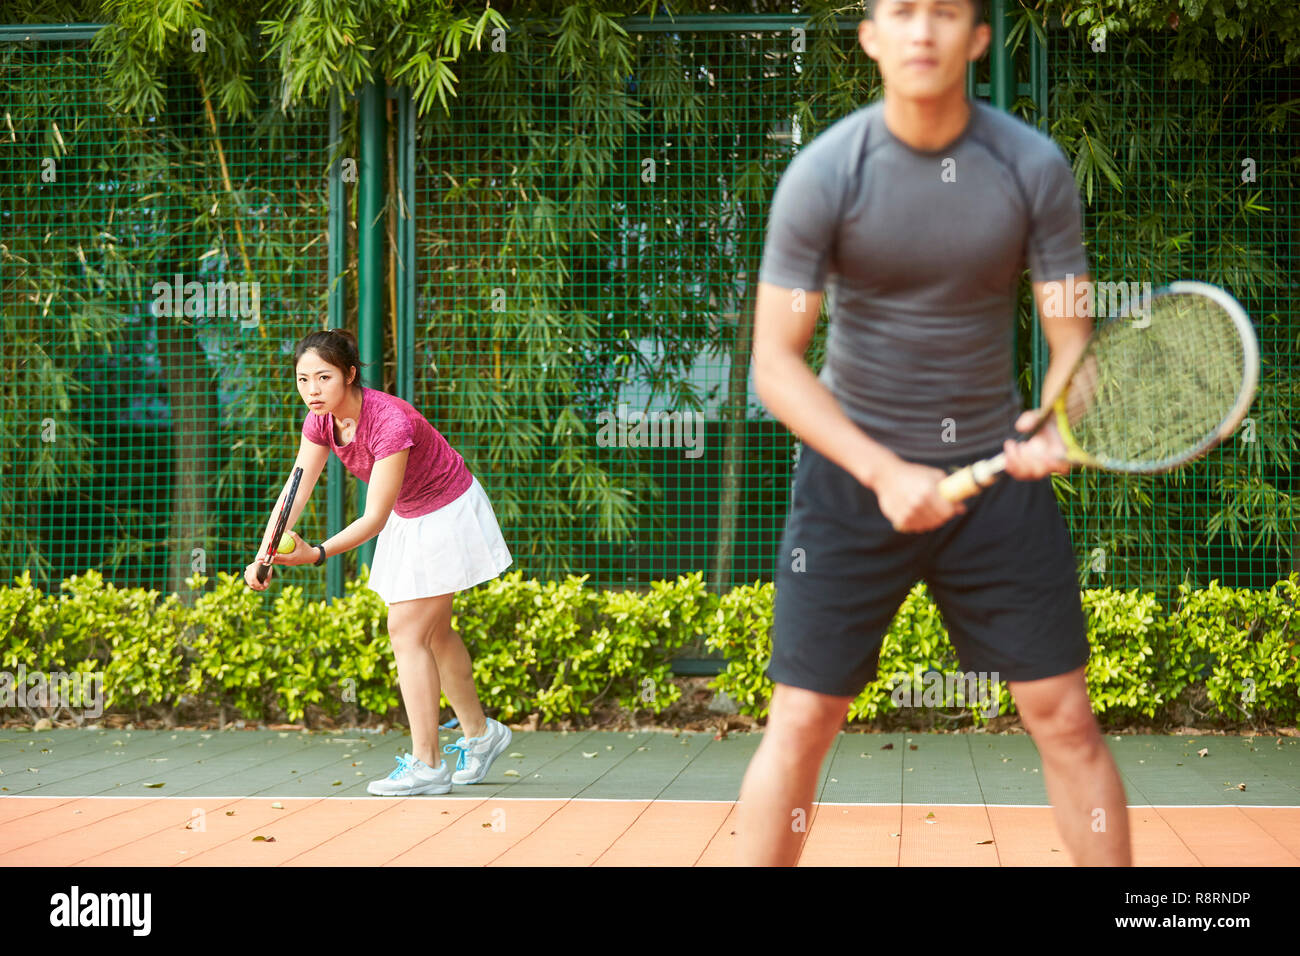 Les jeunes d'Asie femme tennis player prêt à servir dans un match double mixte Banque D'Images